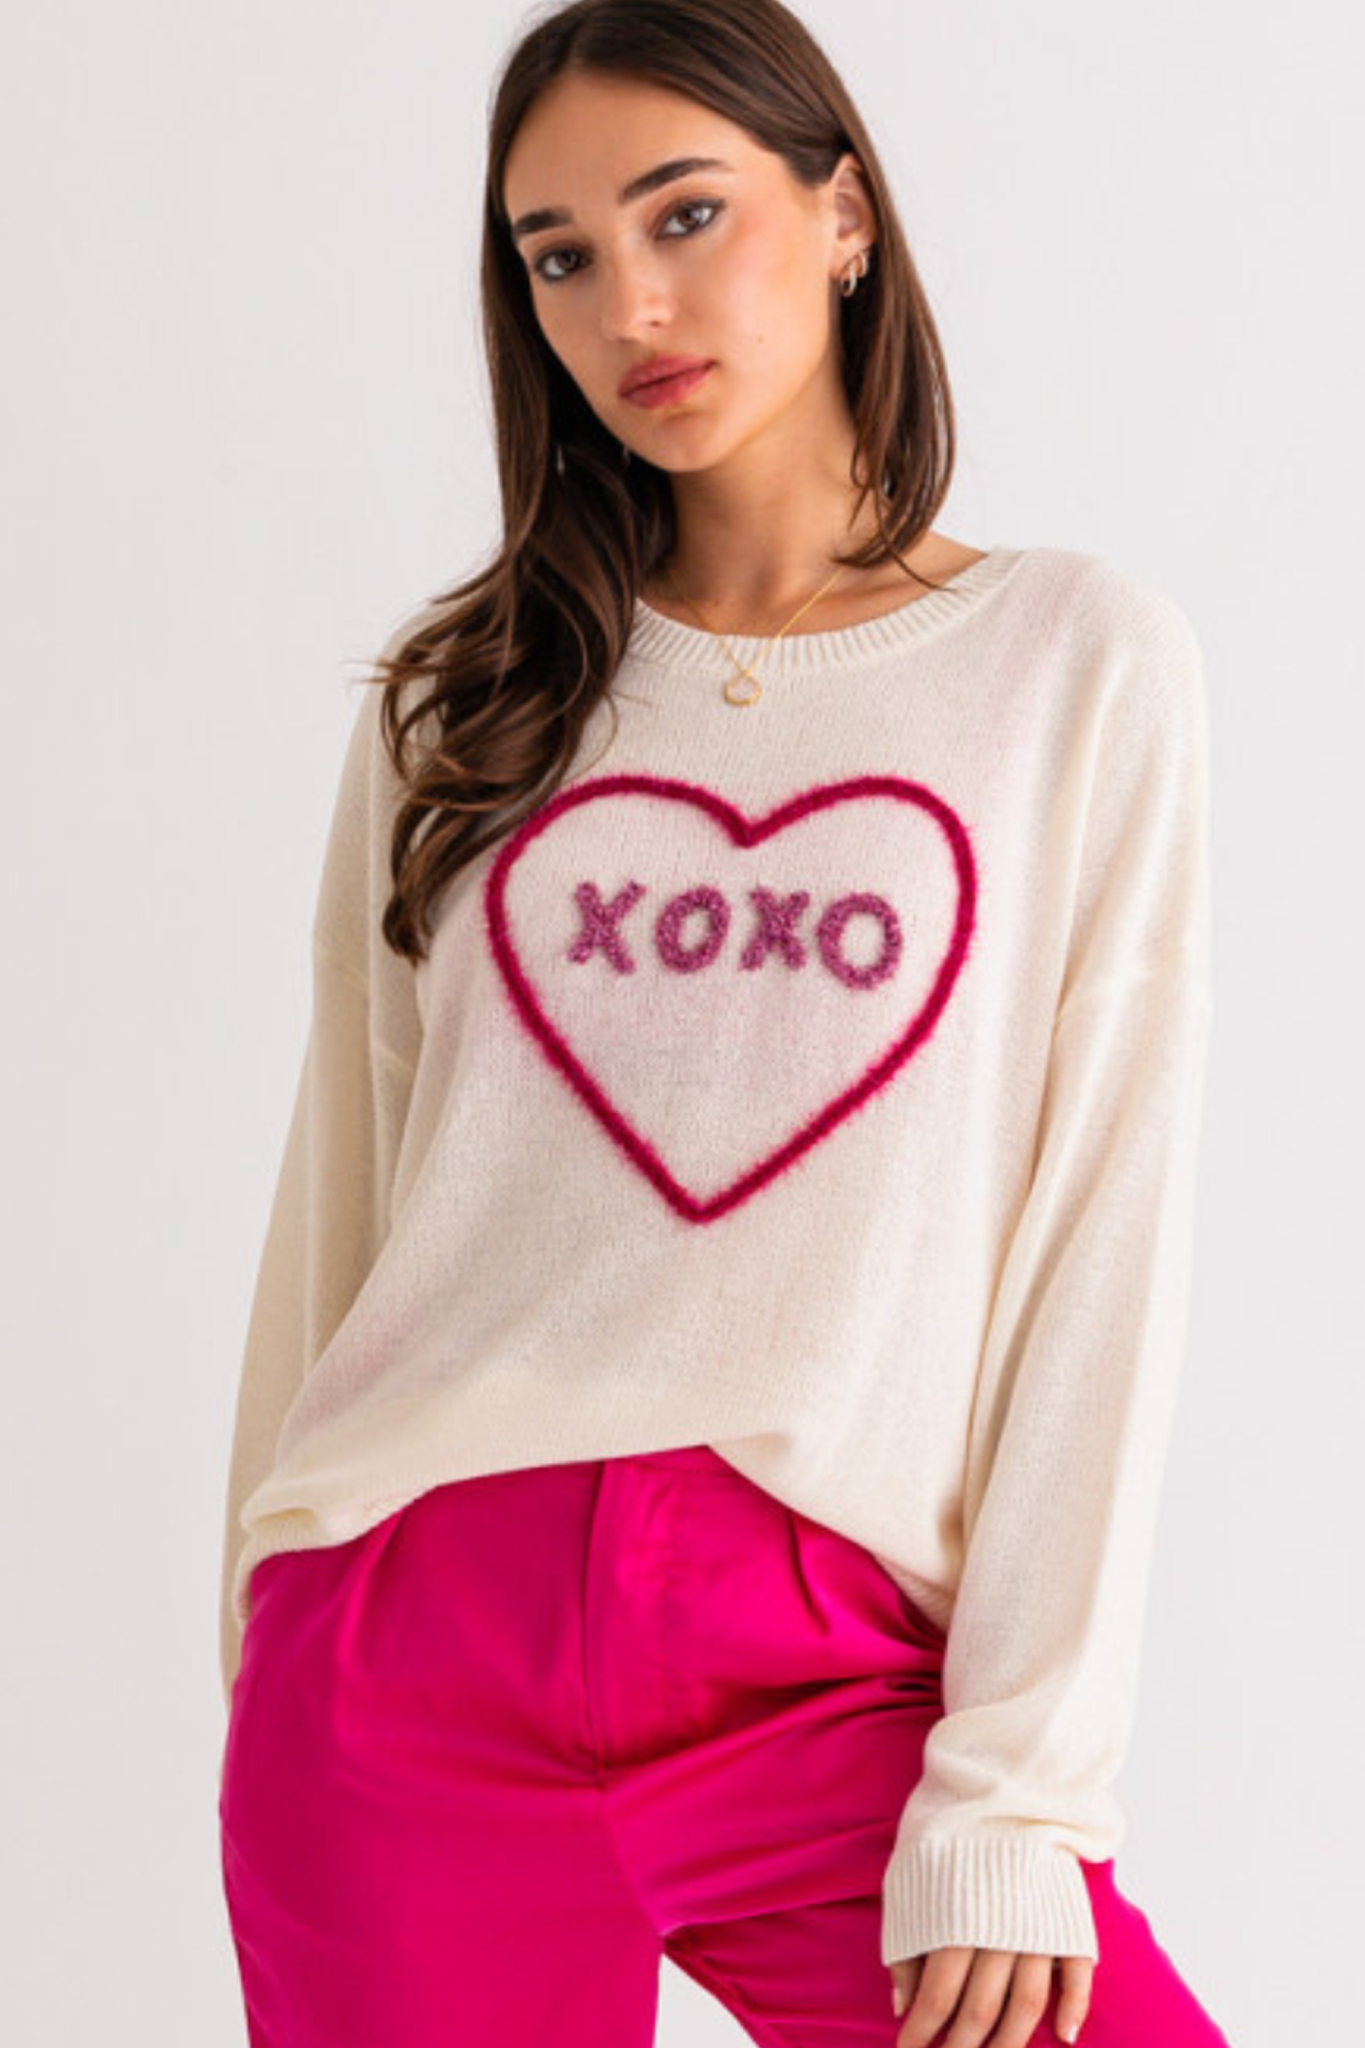 XOXO Sweater Top